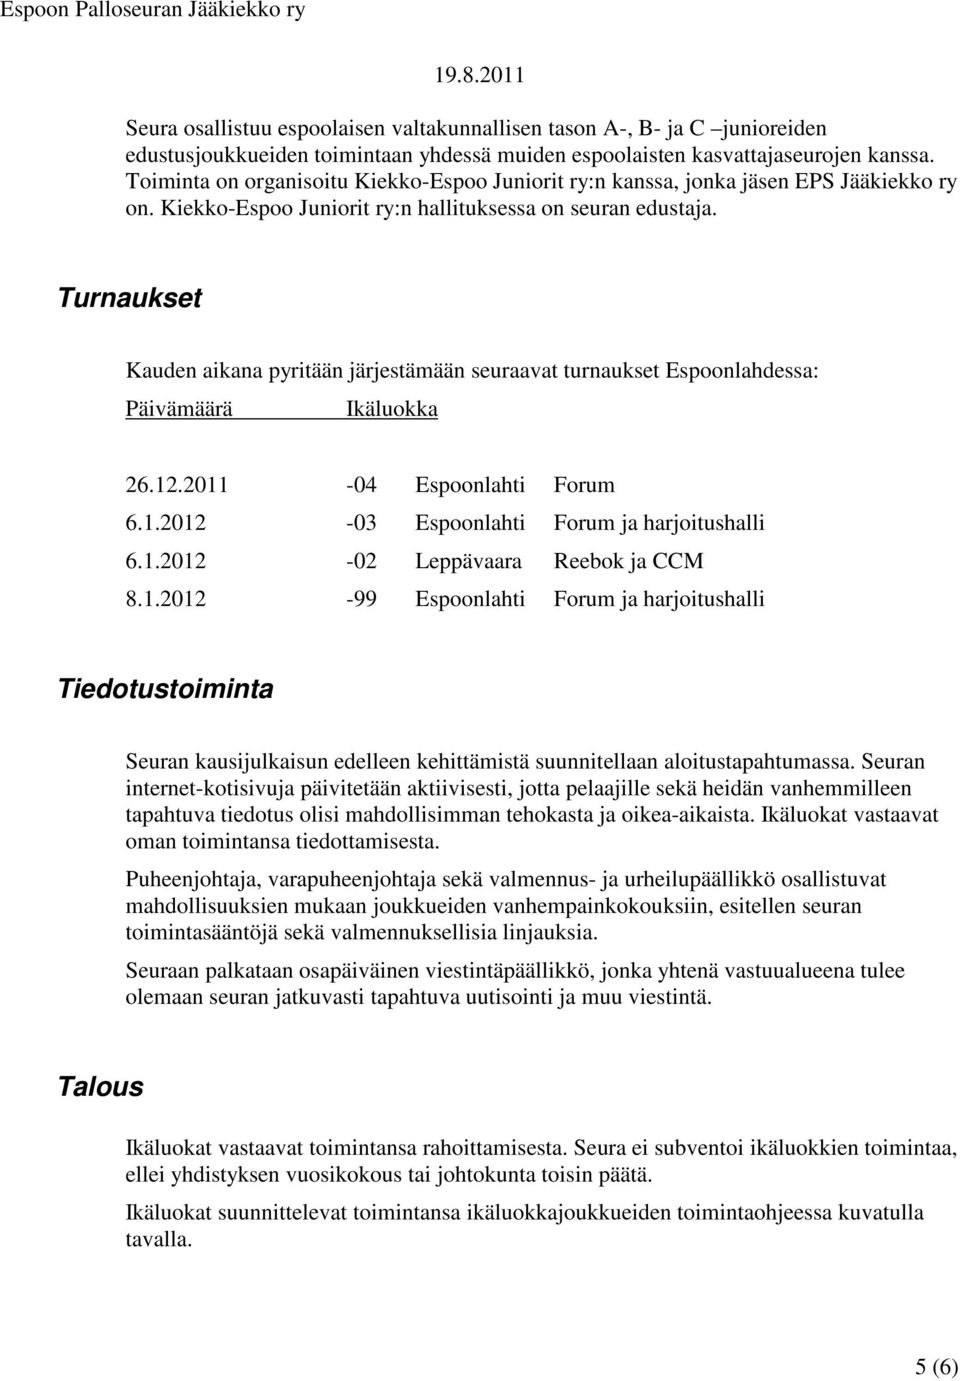 Turnaukset Kauden aikana pyritään järjestämään seuraavat turnaukset Espoonlahdessa: Päivämäärä Ikäluokka 26.12.2011-04 Espoonlahti Forum 6.1.2012-03 Espoonlahti Forum ja harjoitushalli 6.1.2012-02 Leppävaara Reebok ja CCM 8.